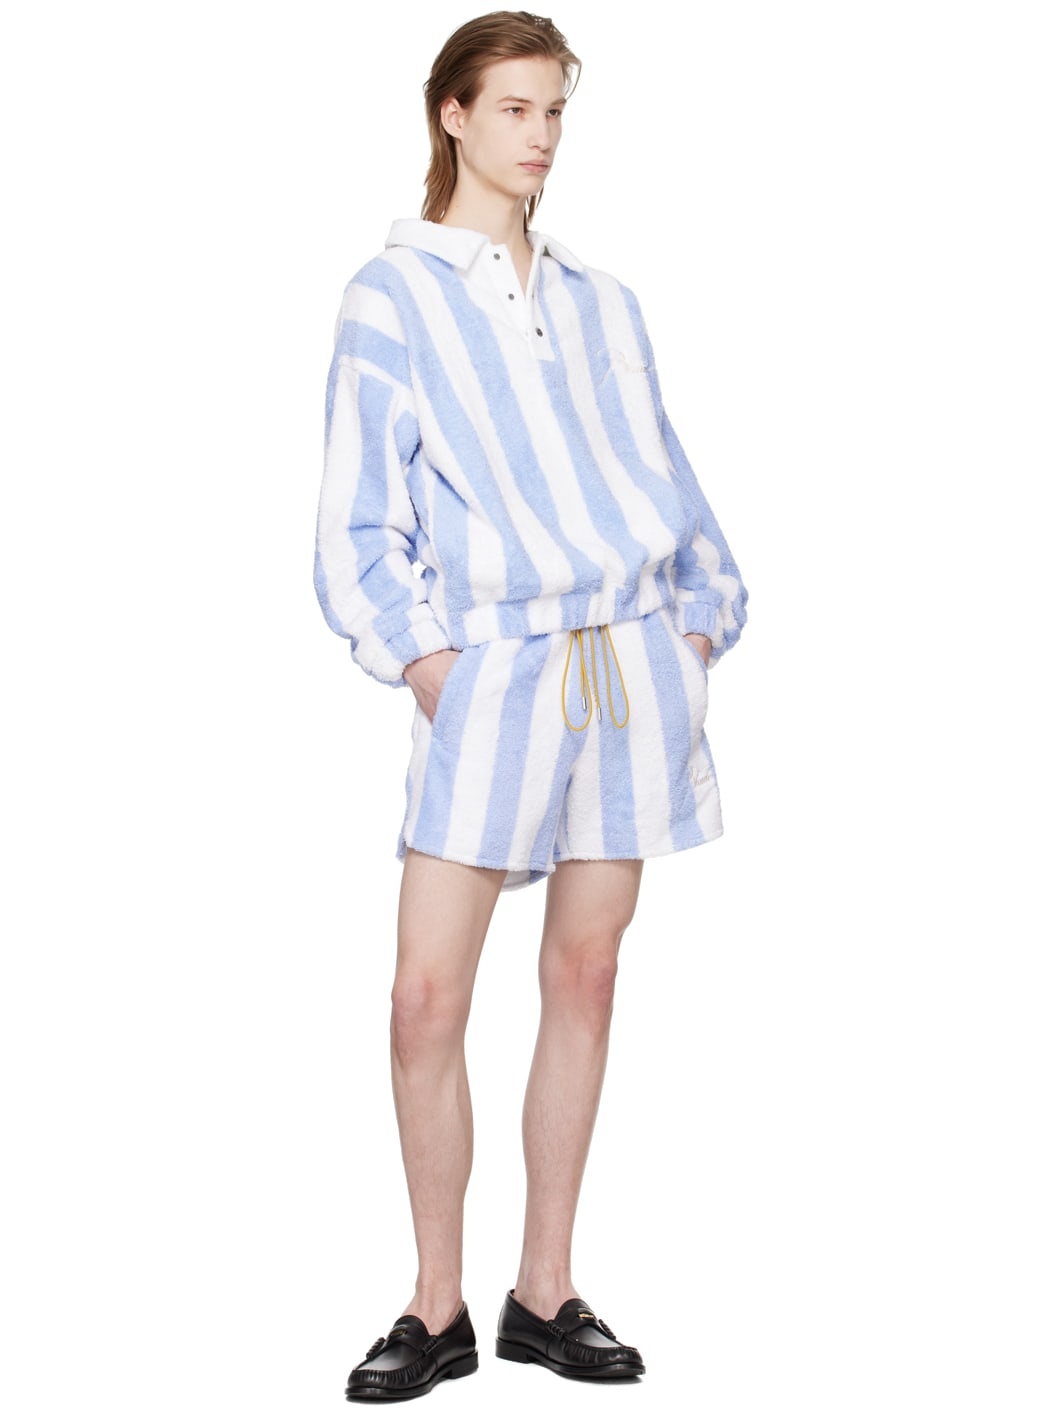 White & Blue Striped Shorts - 4